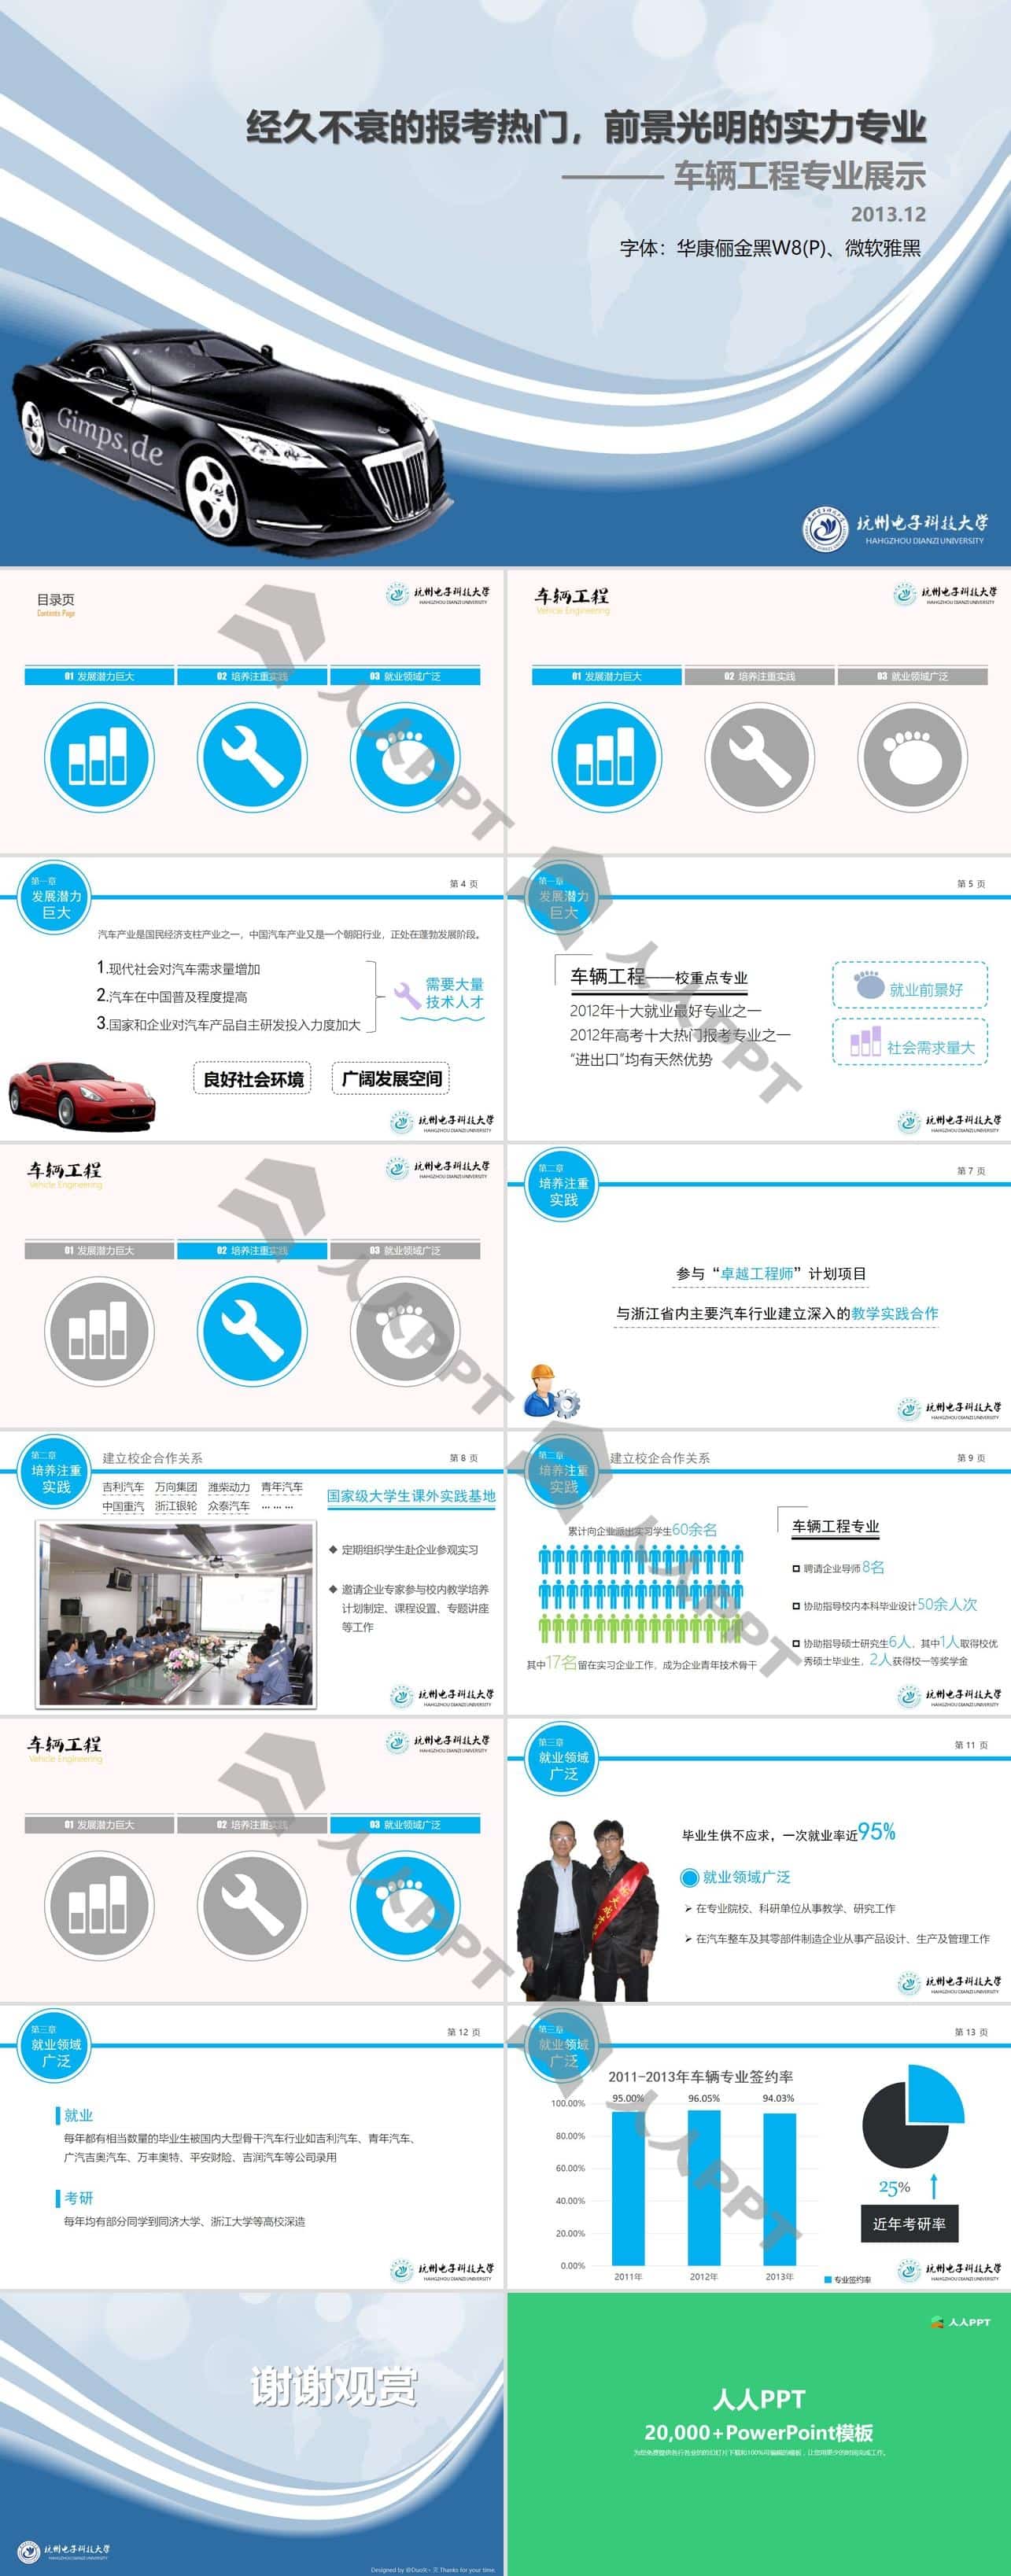 车辆工程专业未来发展与就业情况介绍PPT模板长图